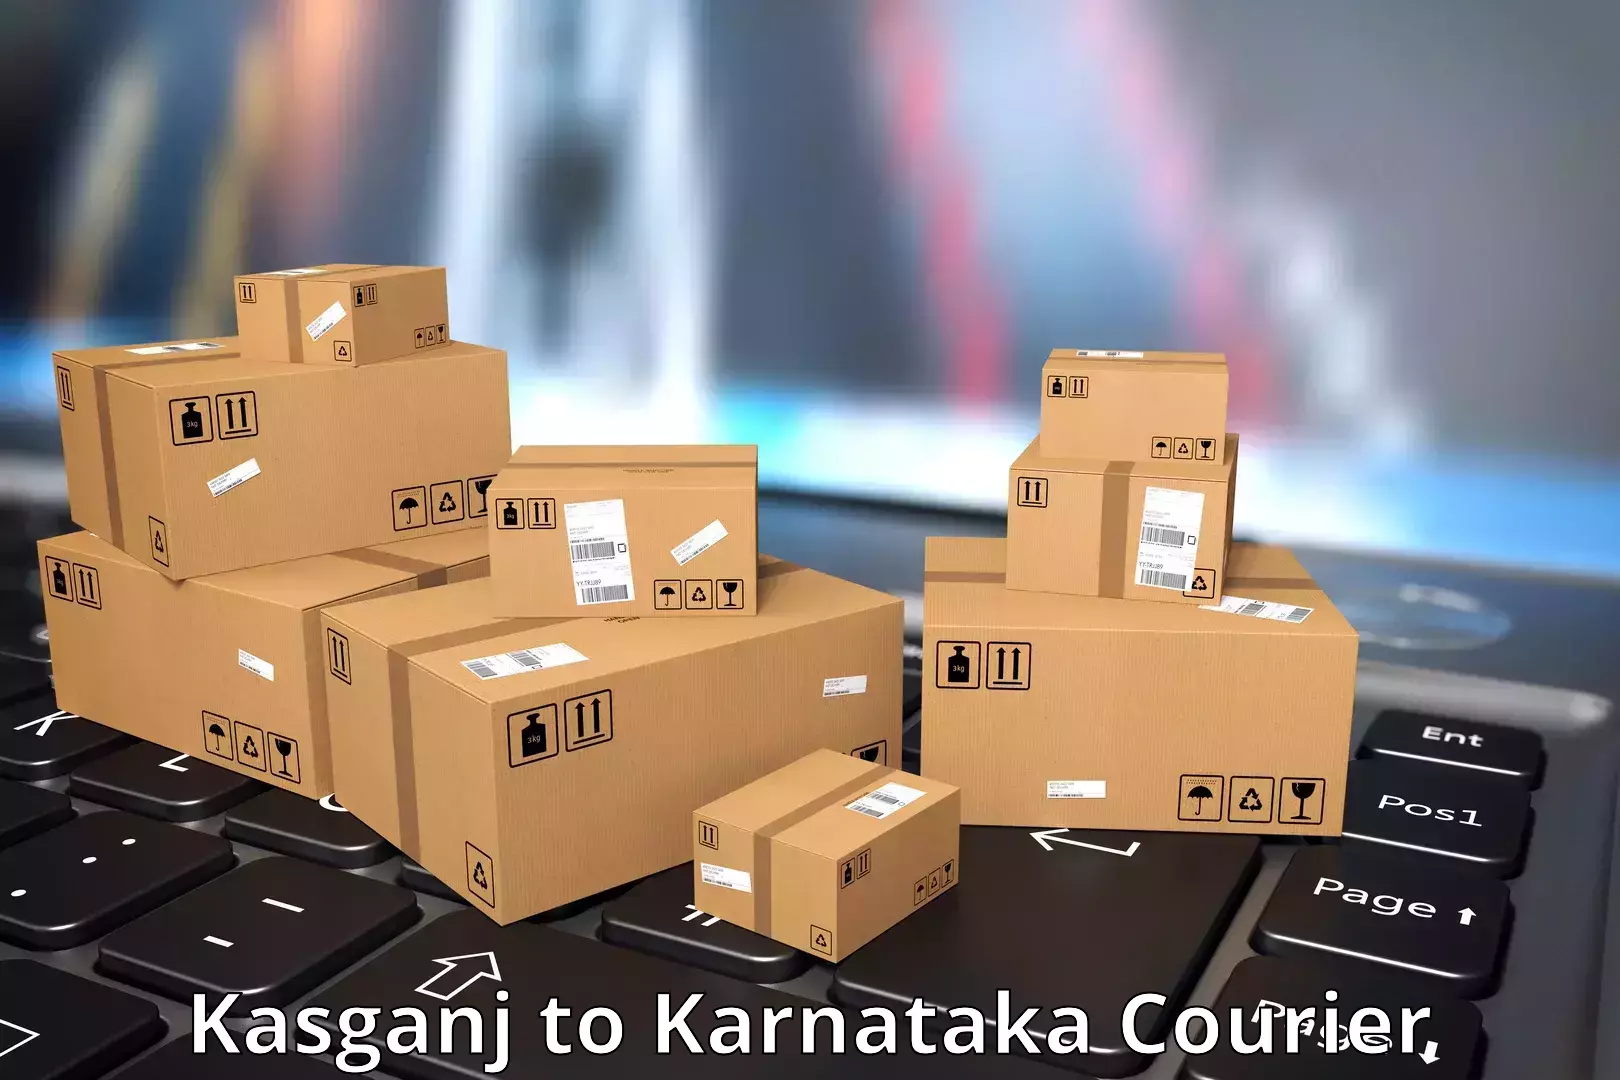 Courier service comparison Kasganj to Honnavar